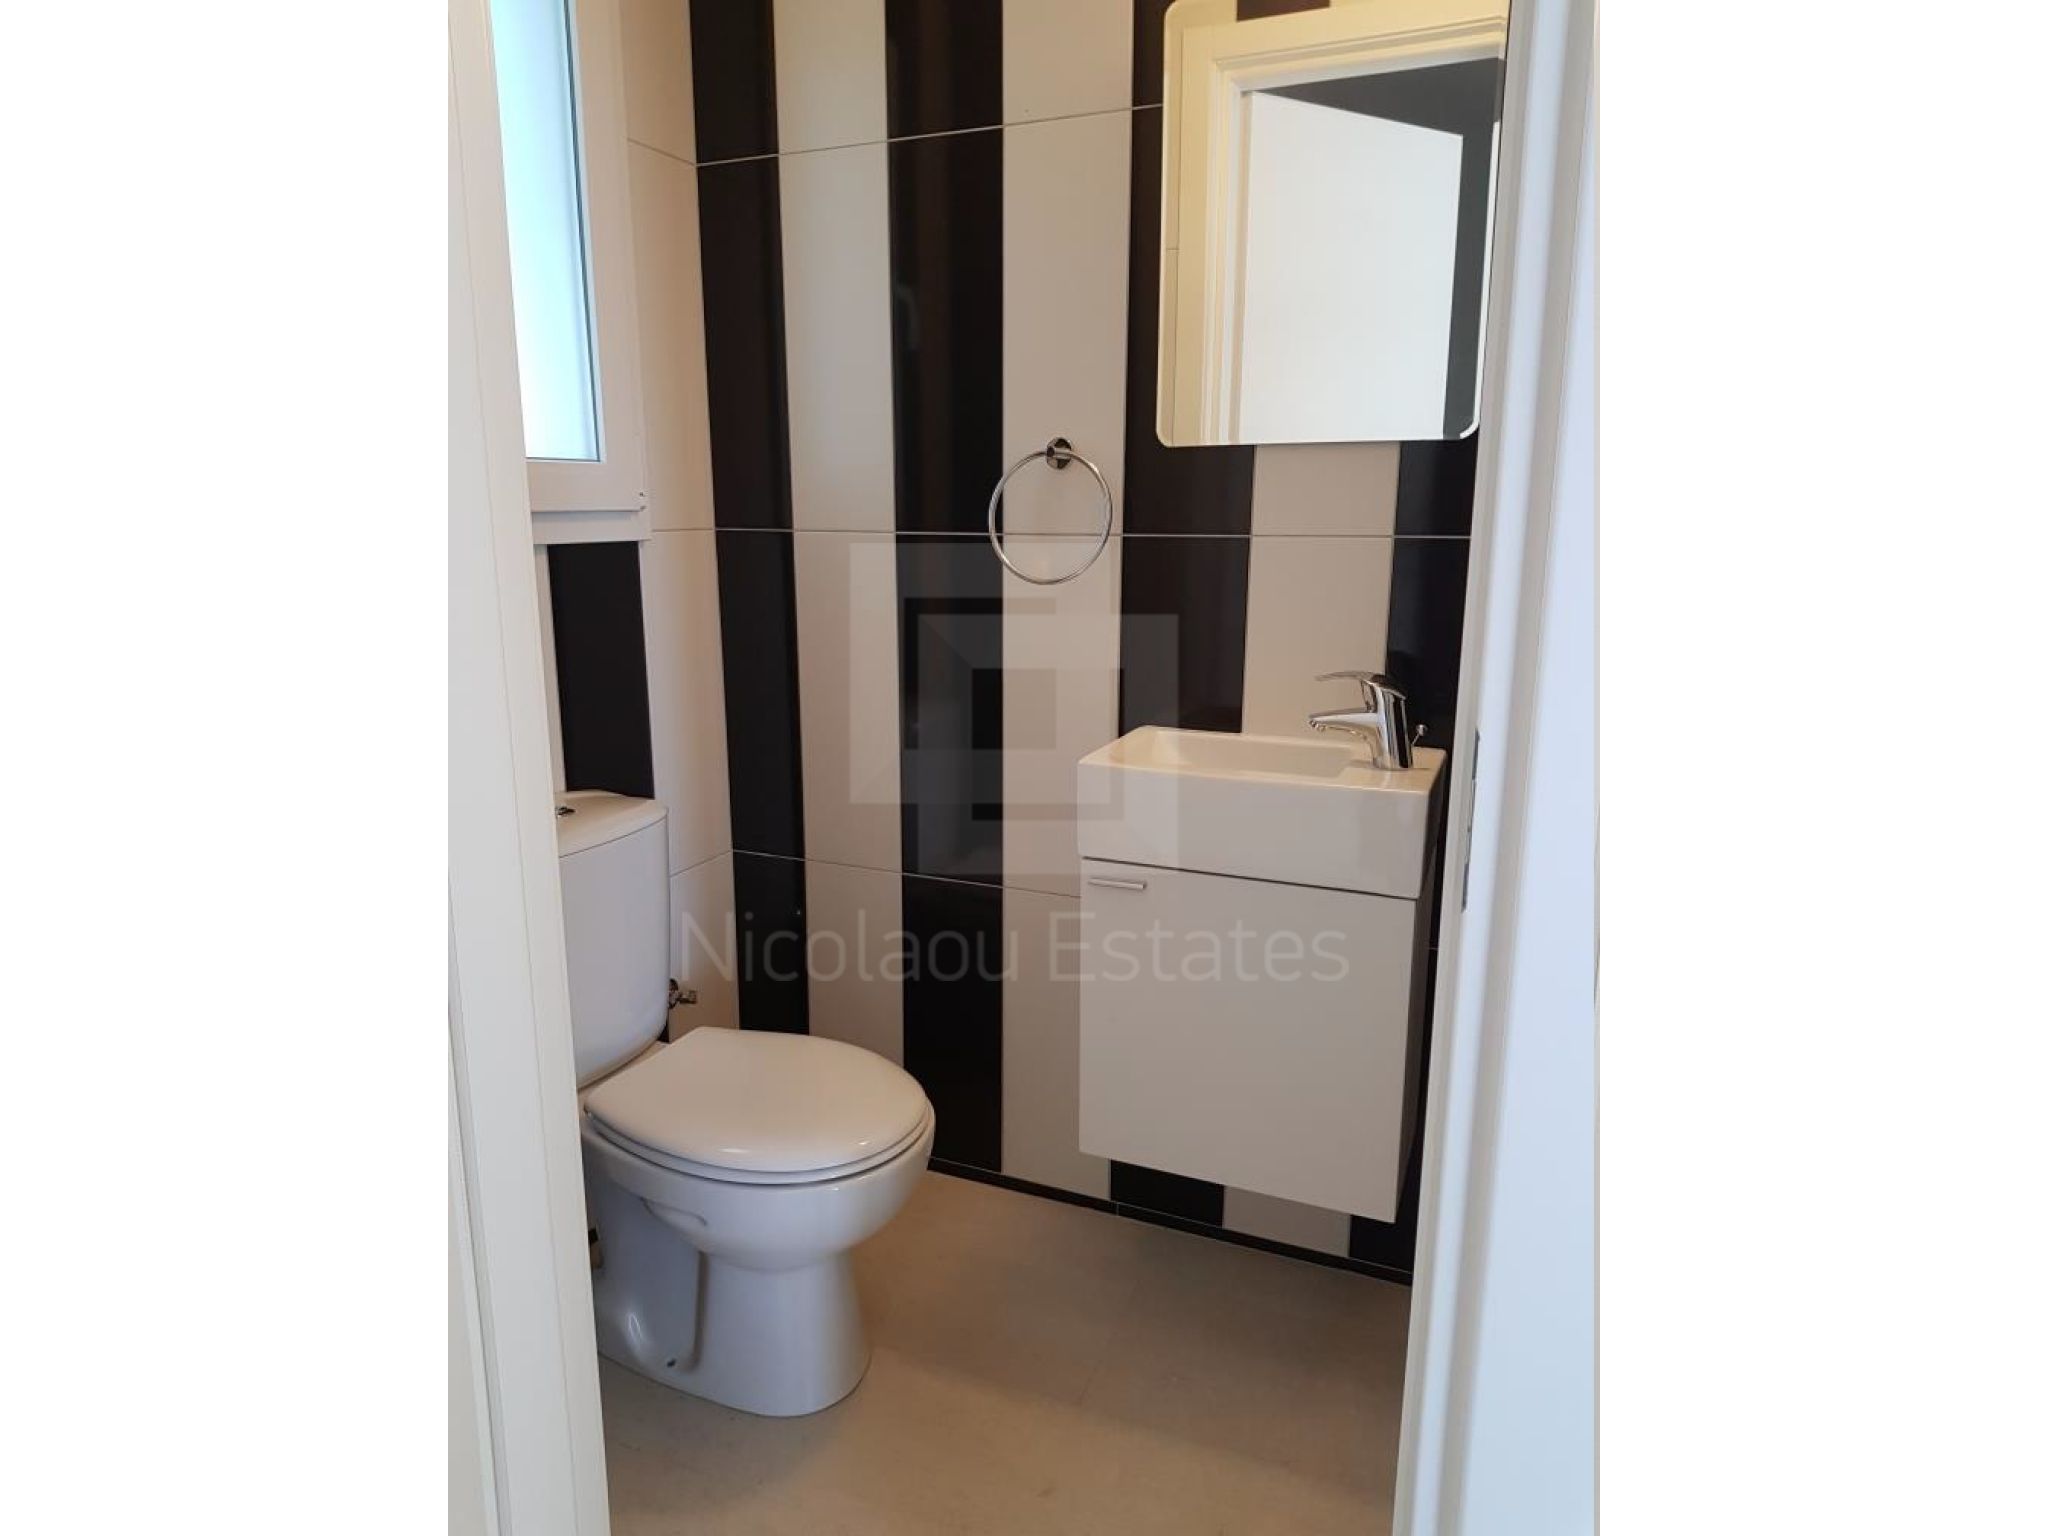 https://www.propertiescy.com/images/uploads/listings/large/14191-1592899822_guest-toilet.jpg